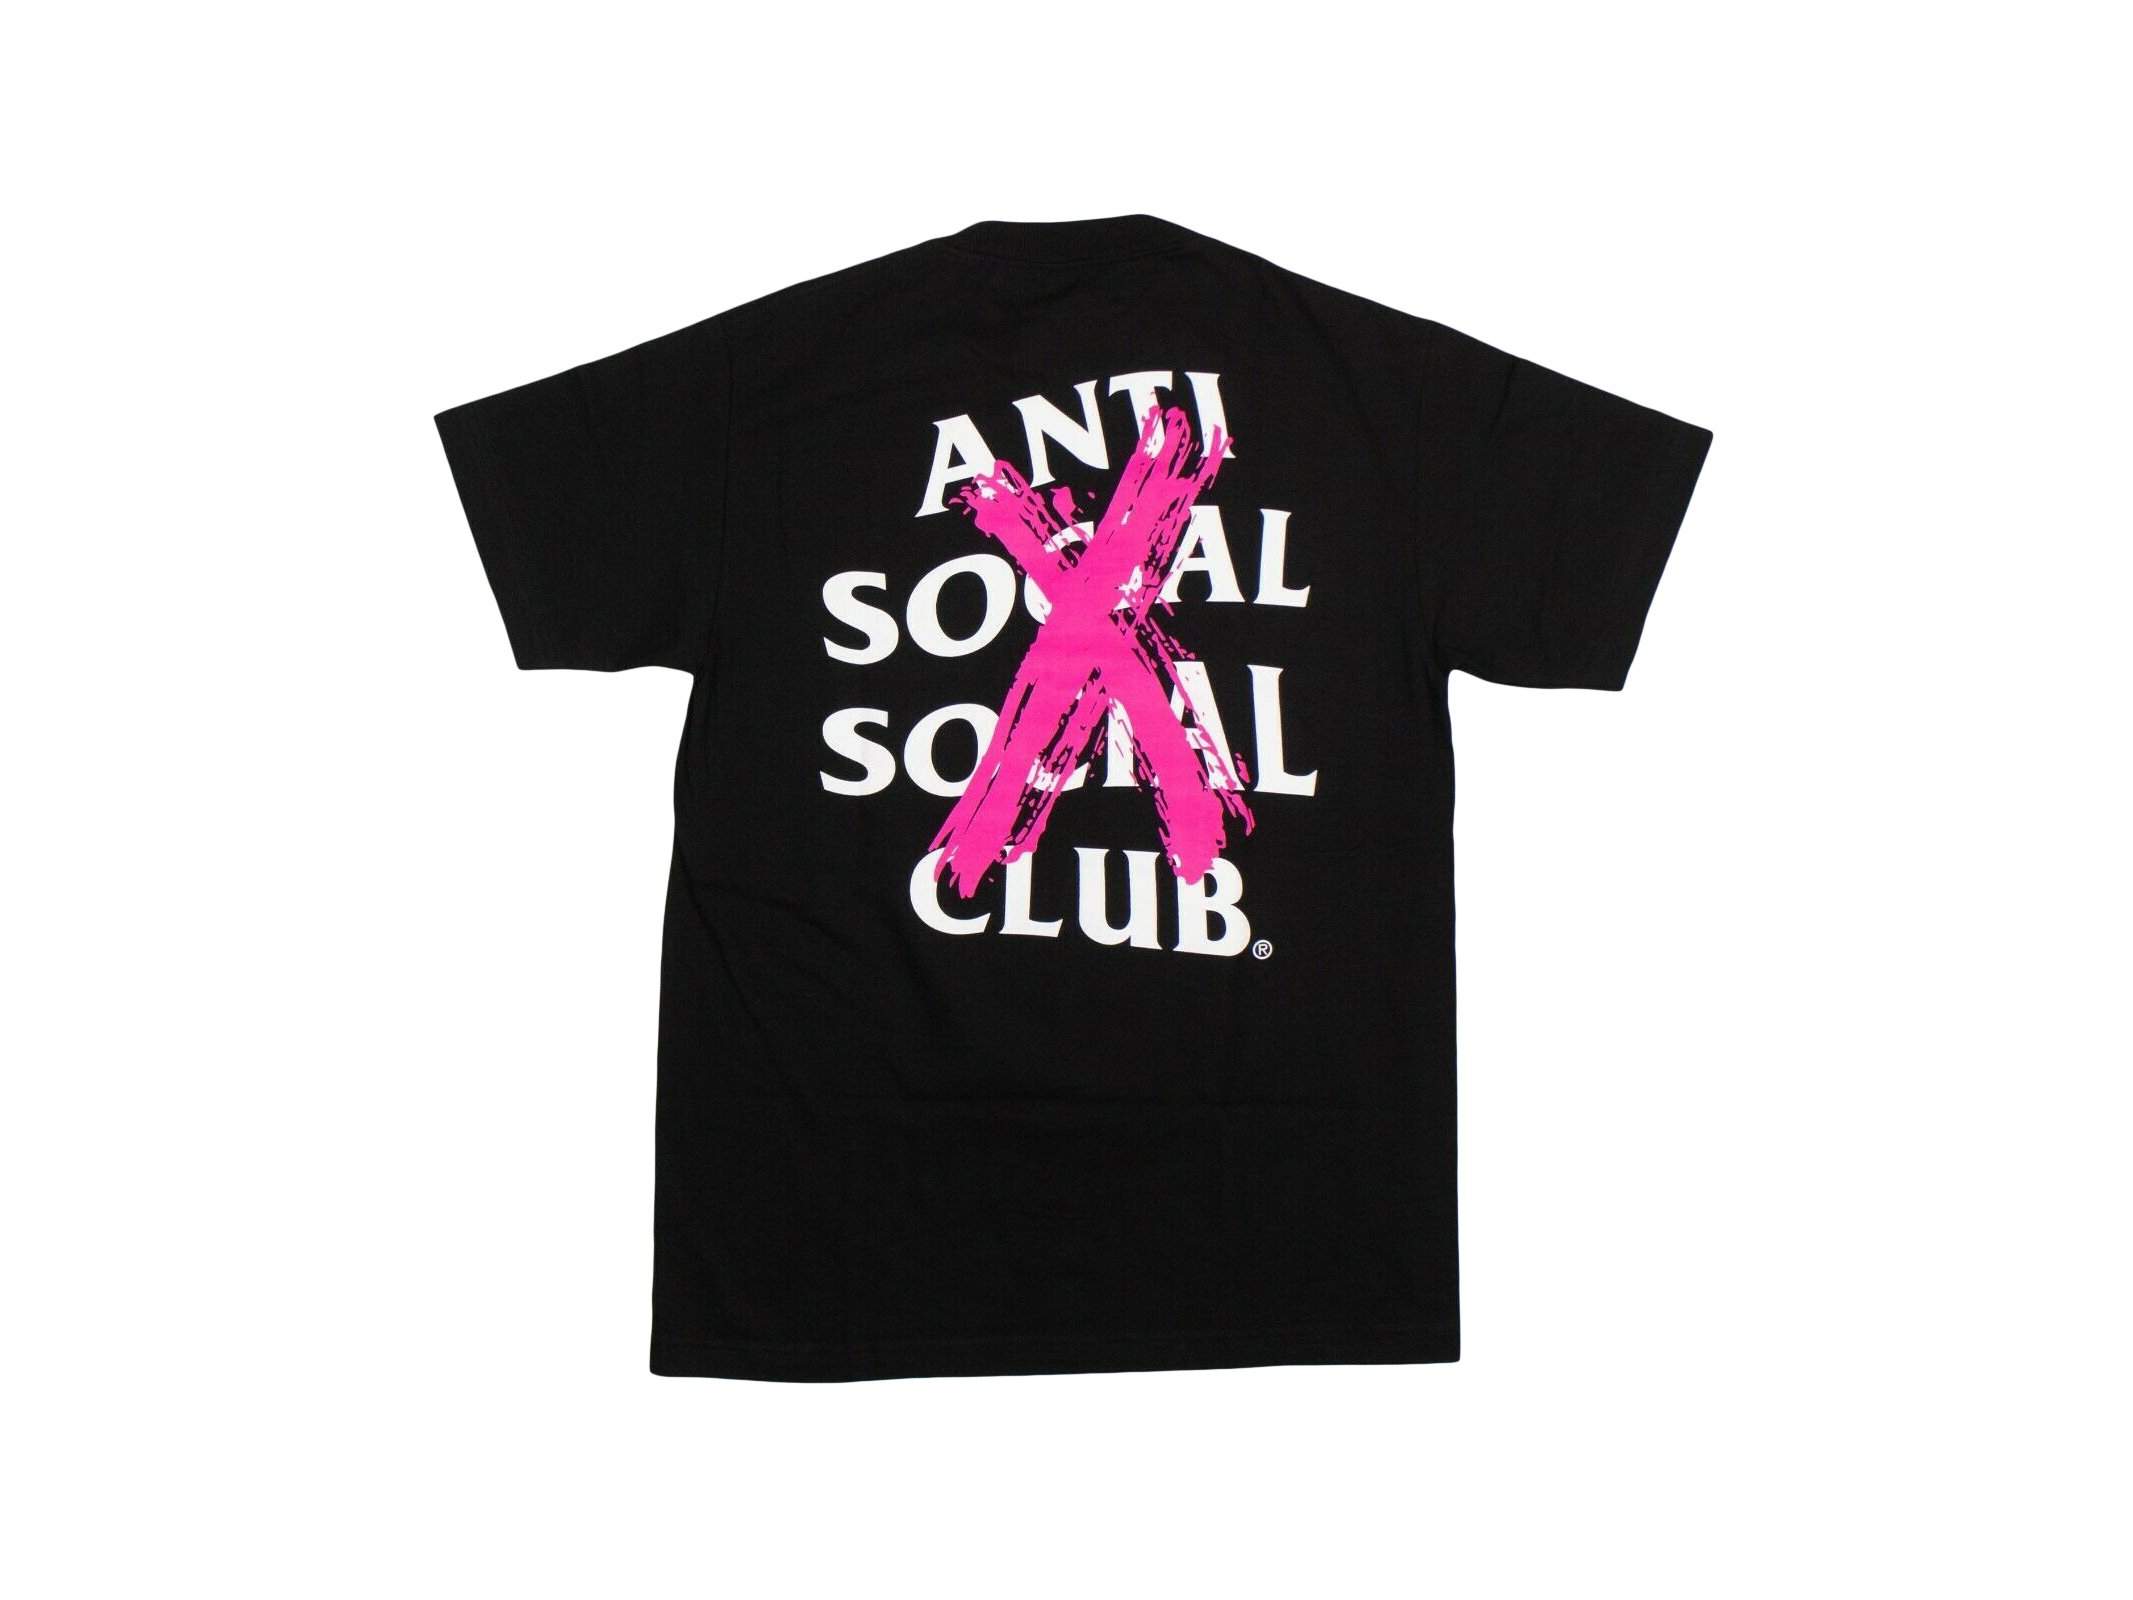 anti social social club Tシャツ 新品